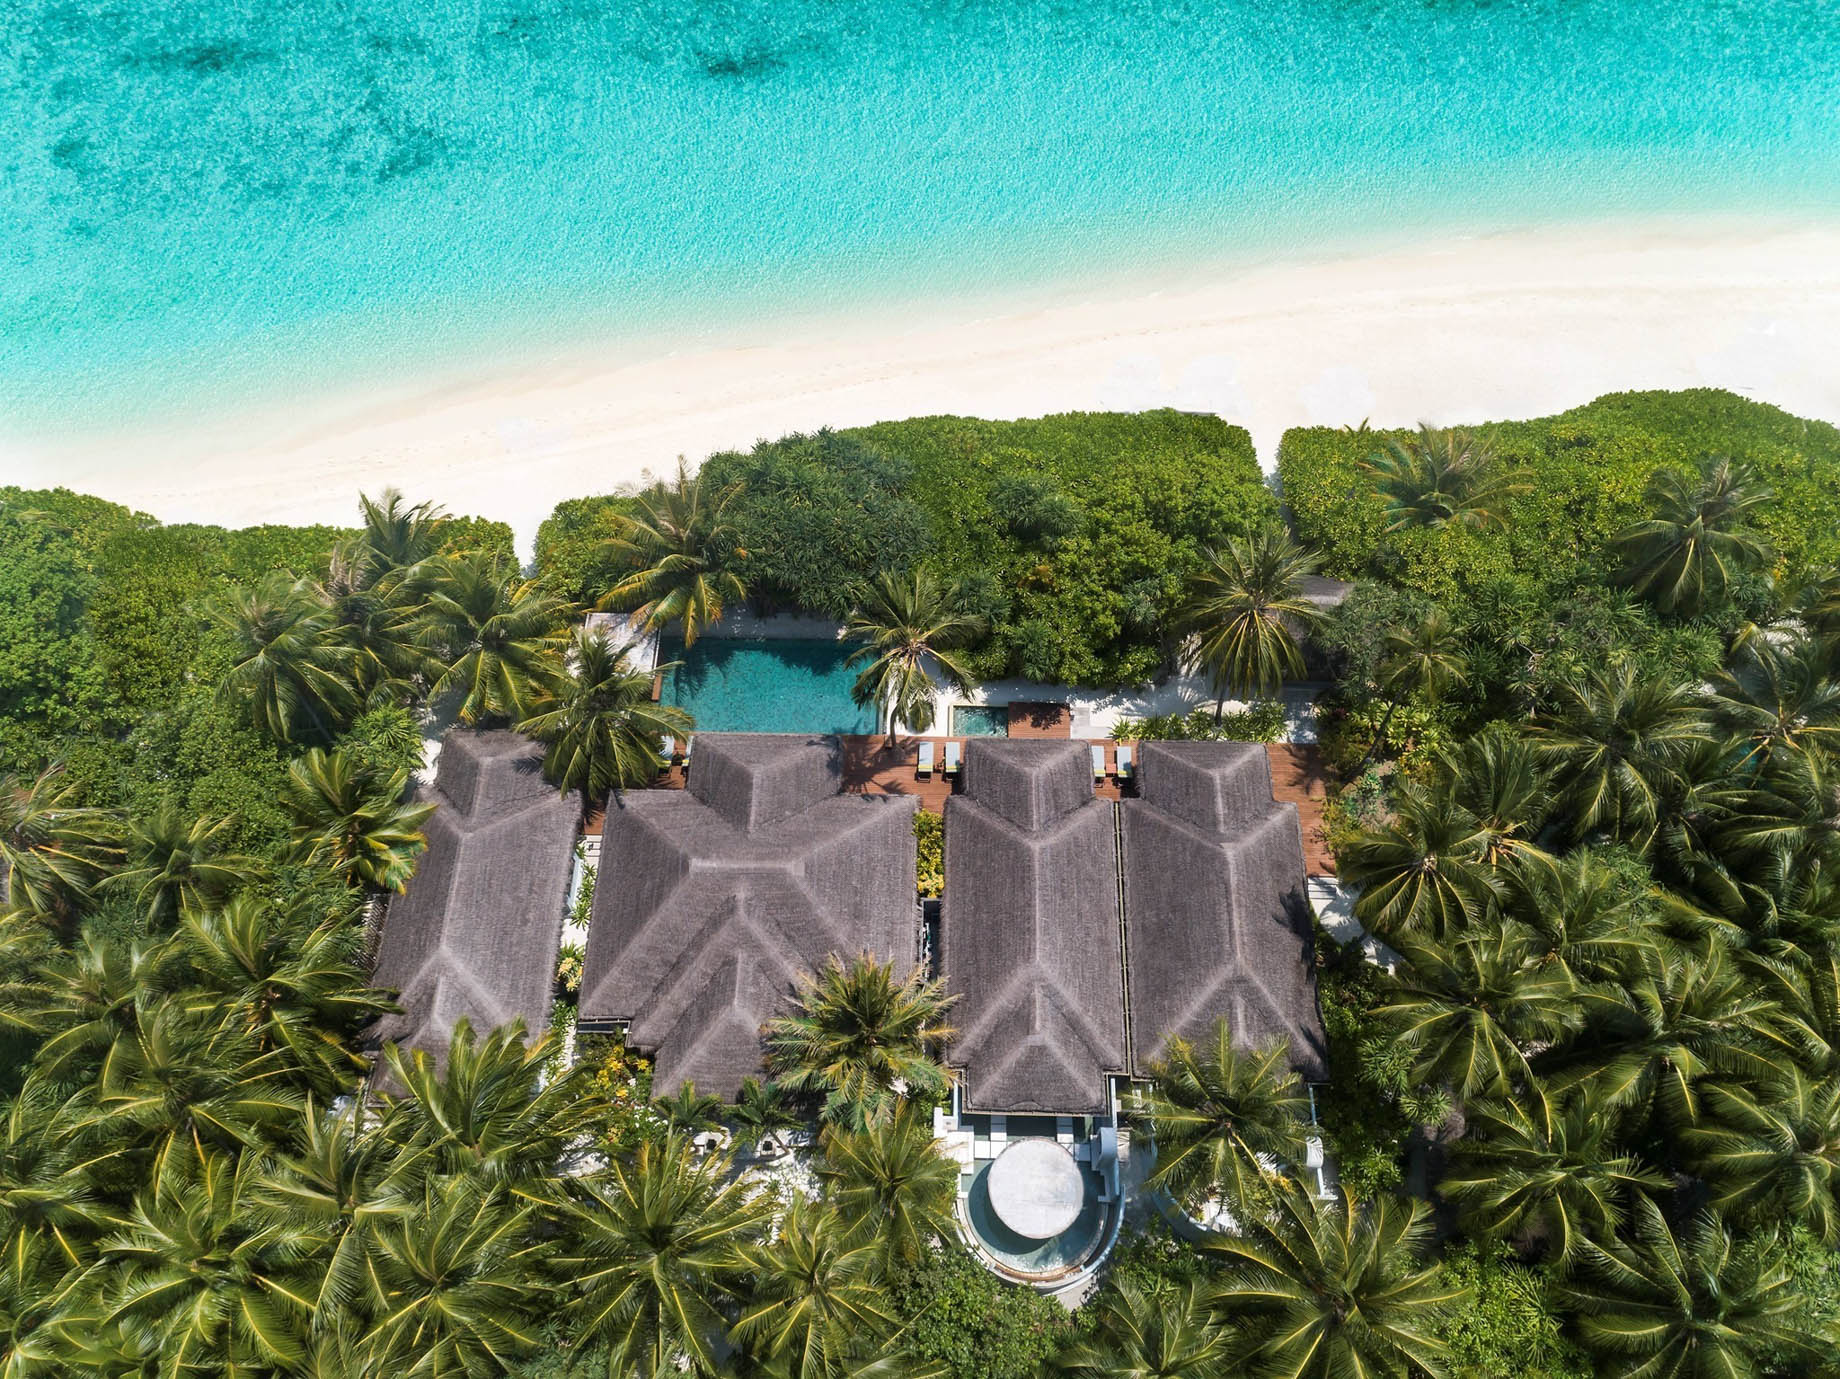 Anantara Kihavah Maldives Villas Resort – Baa Atoll, Maldives – Three Bedroom Beach Pool Residence Aerial View